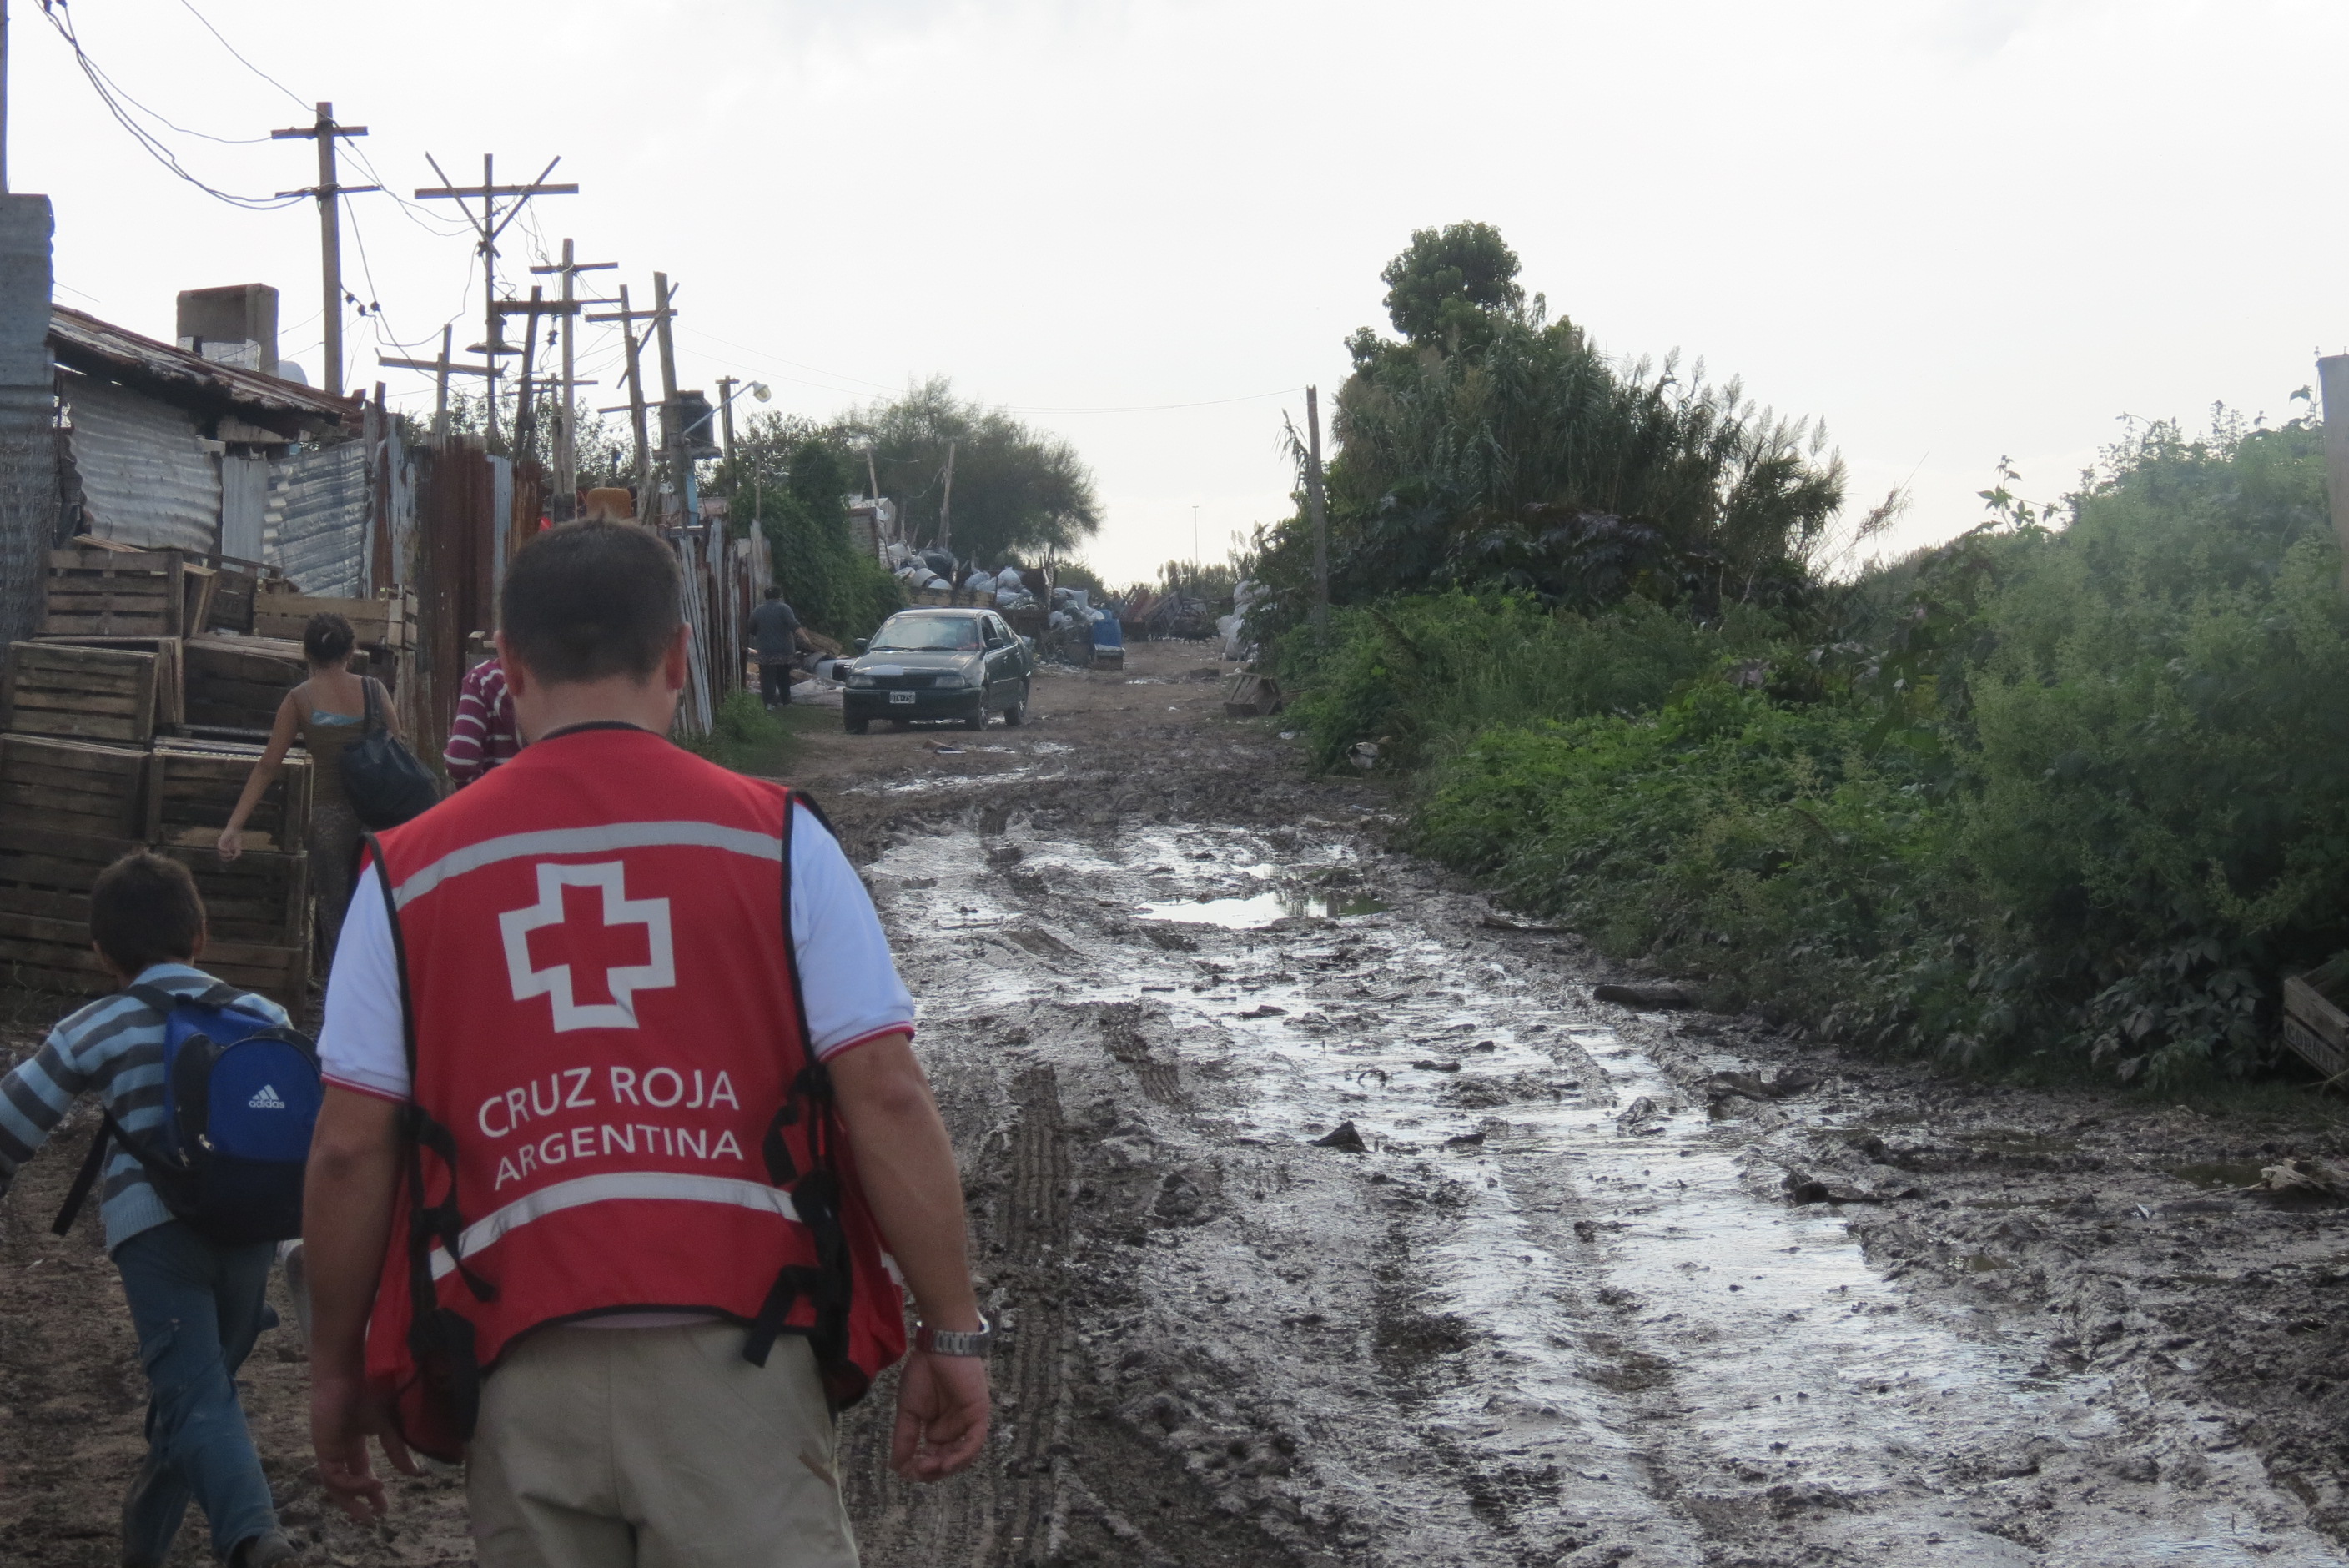 En 2003, más de 5.000 voluntarios realizaron rescates acuáticos, distribución de ayuda humanitaria y brindaron apoyo psicosocial a las familias afectadas por la inundación que dejó bajo el agua a la ciudad de Santa Fe y localidades aledañas (Foto: Cruz Roja Argentina)